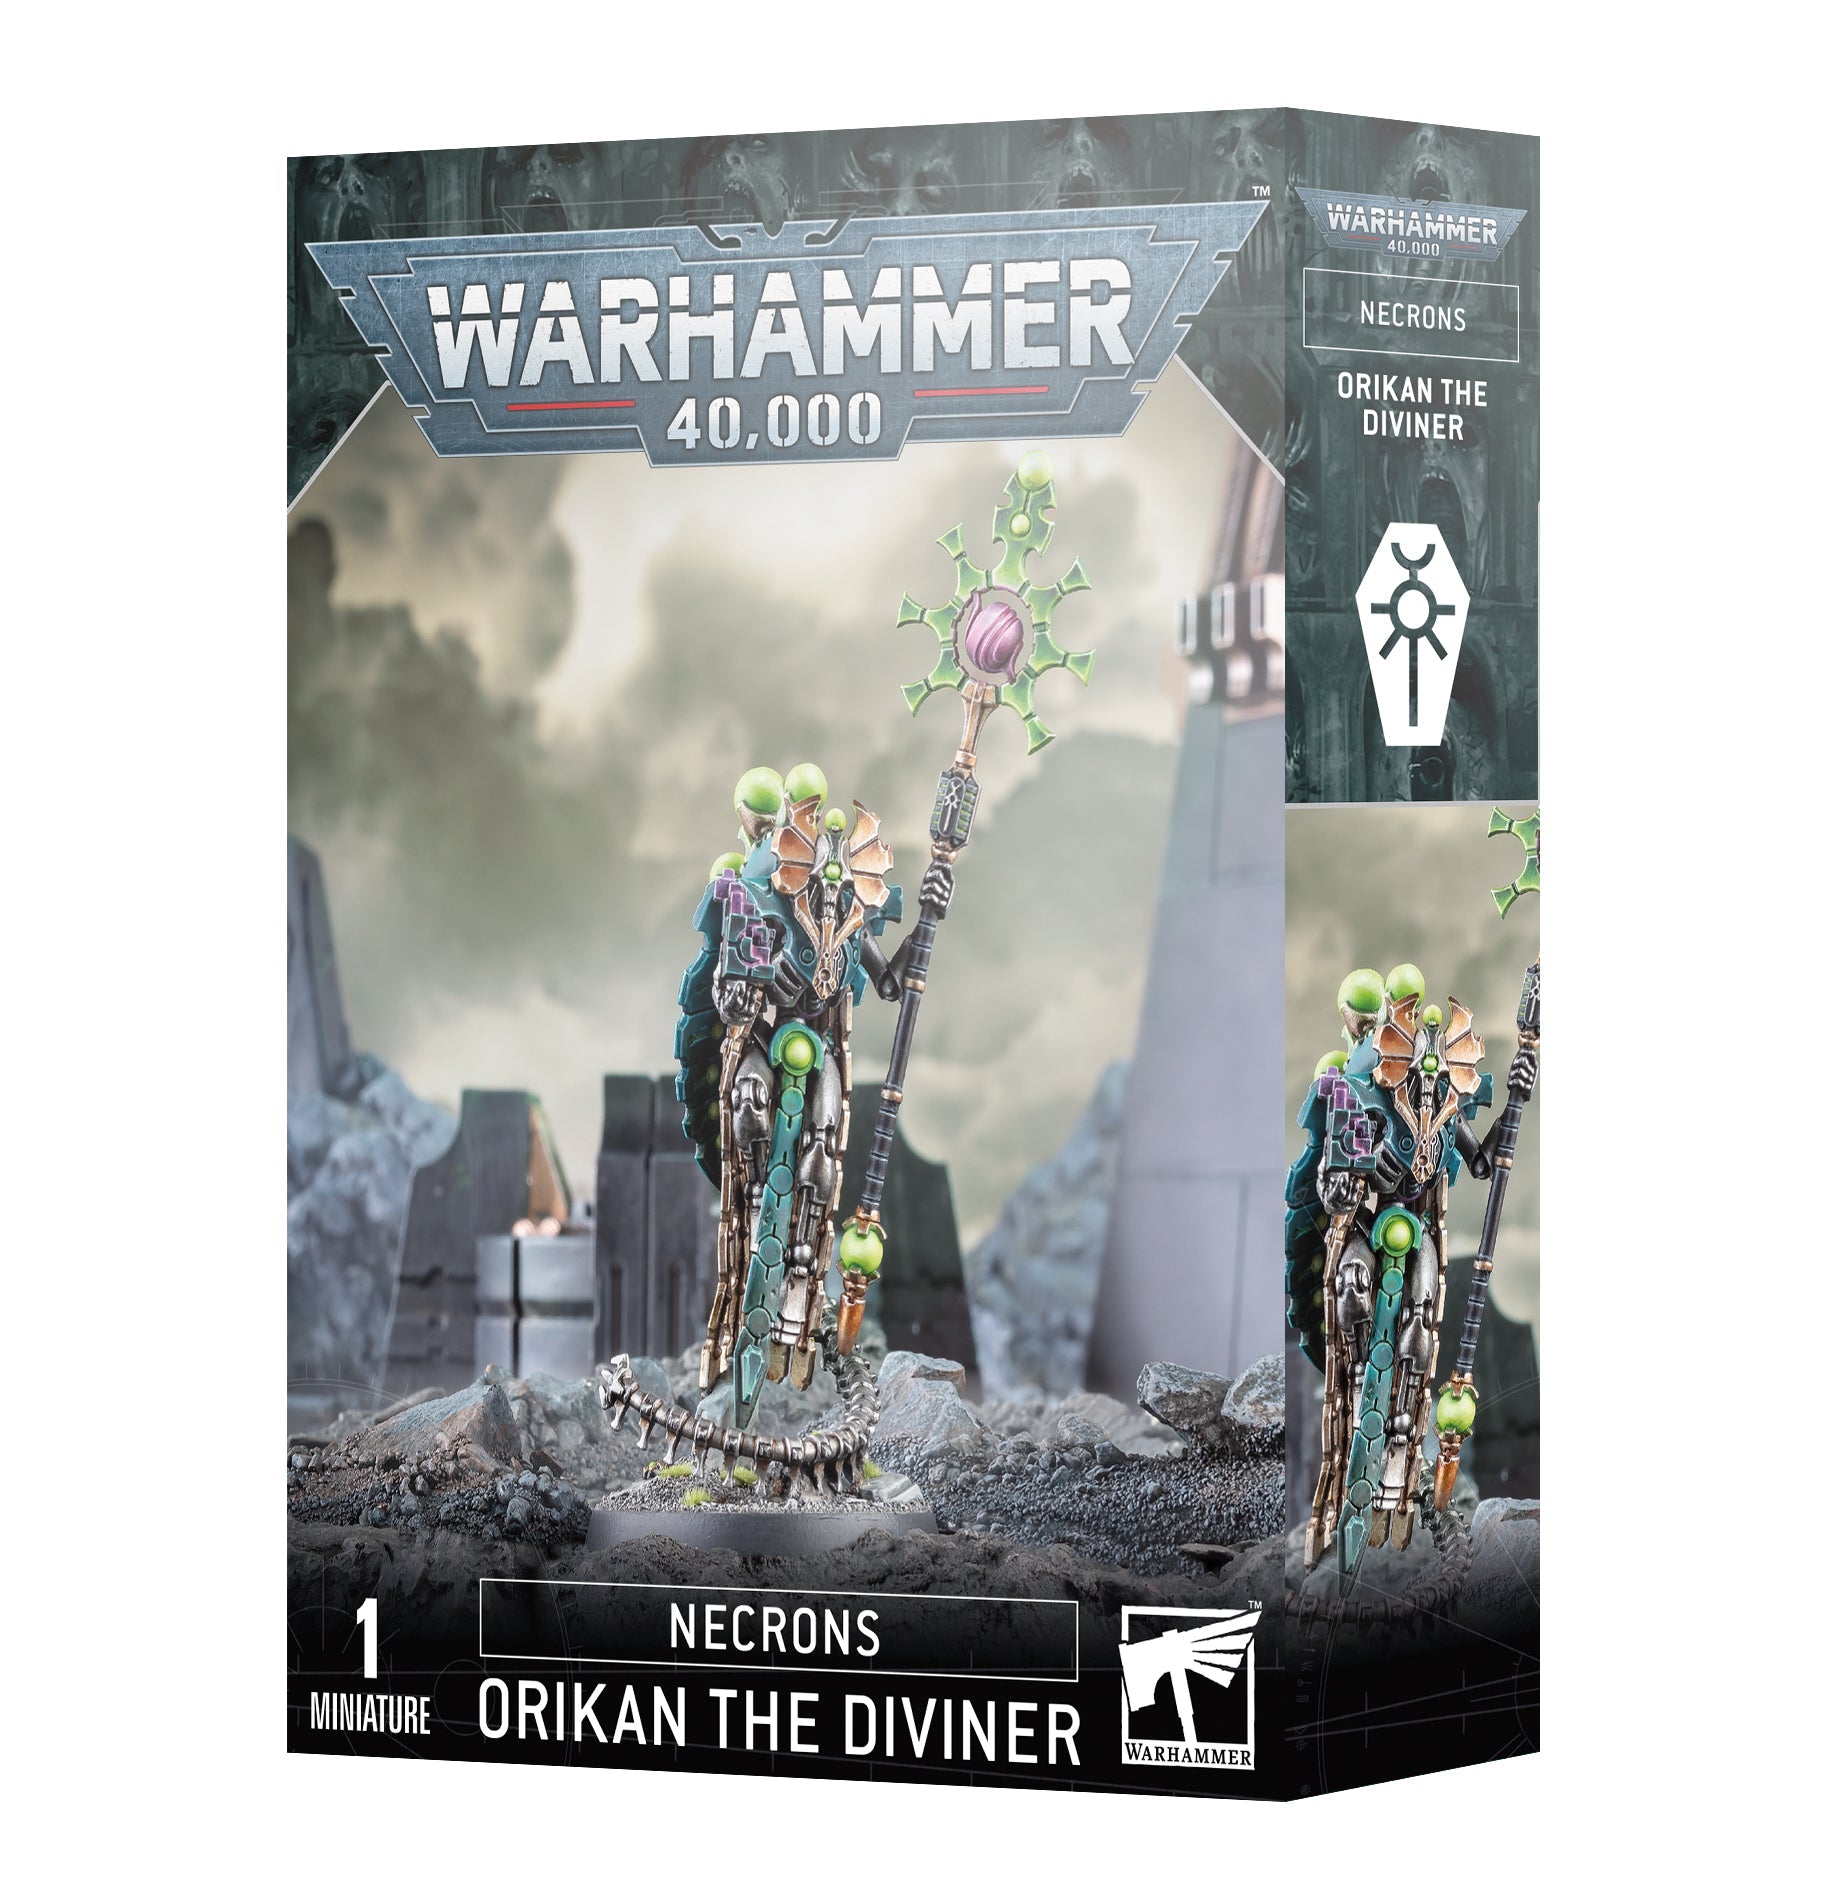 ORIKAN THE DIVINER | Multizone: Comics And Games